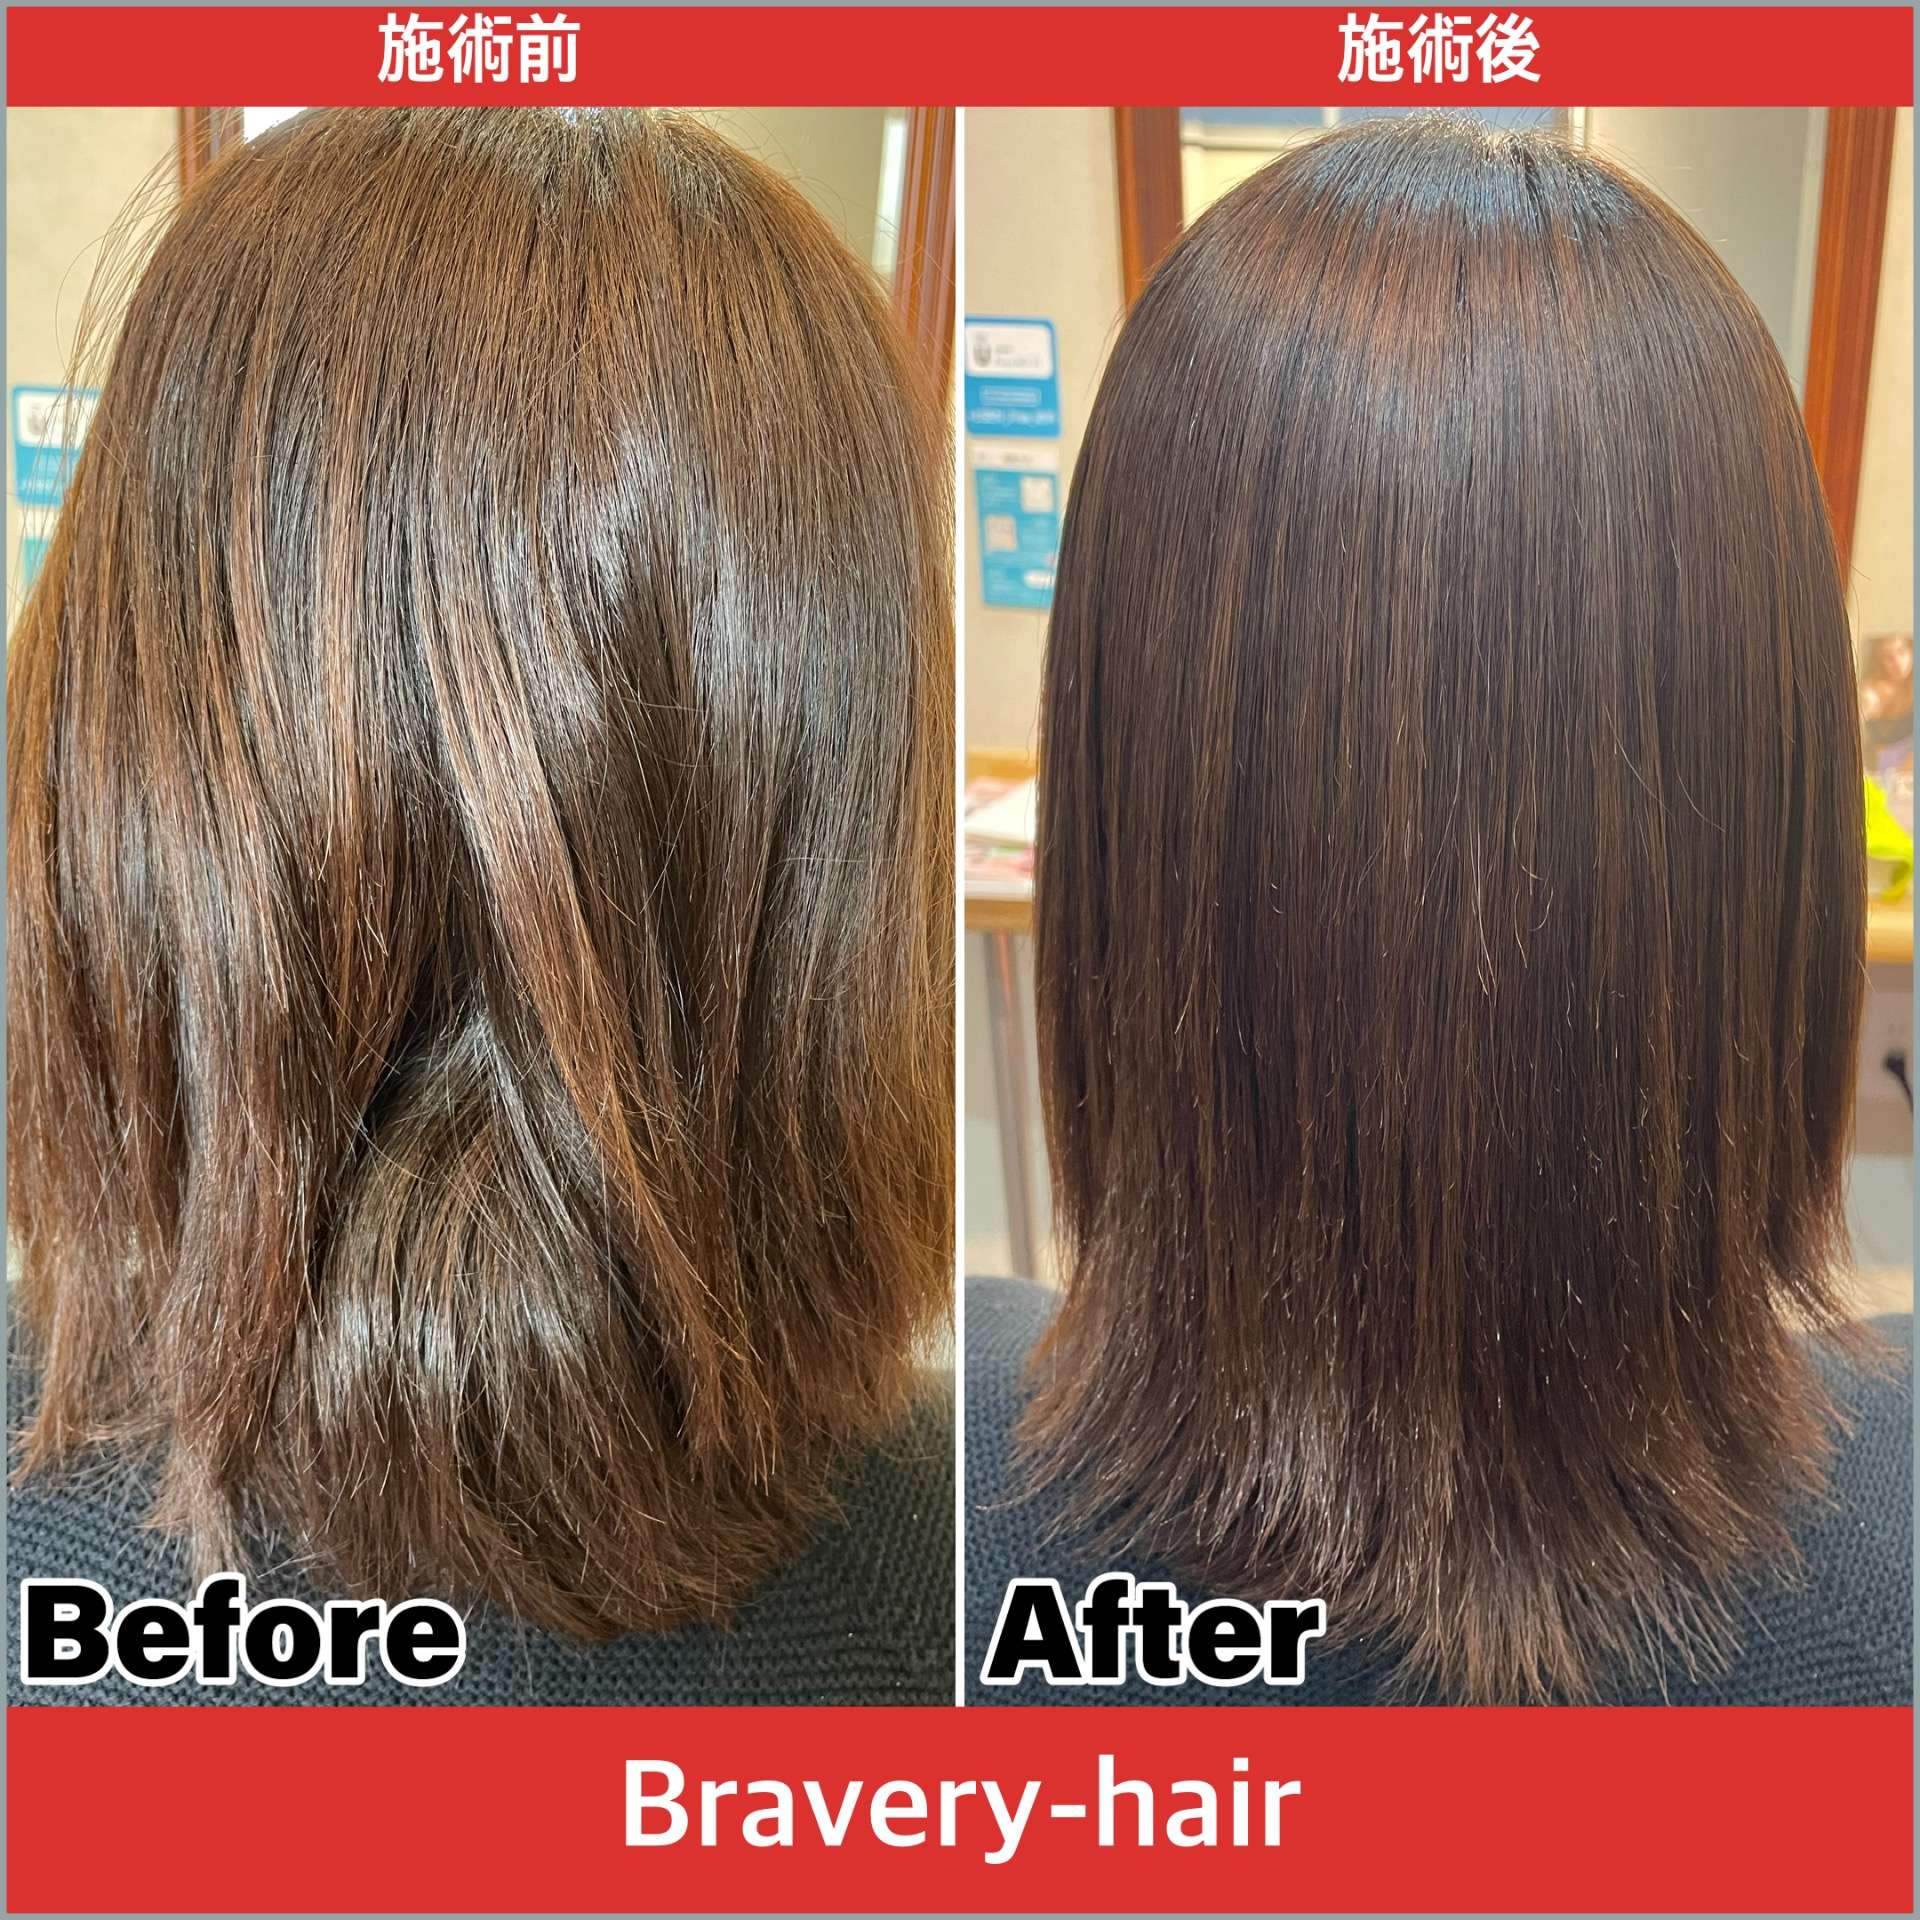 縮毛矯正も人気な綾羅木の美容院、Bravery-hairです！